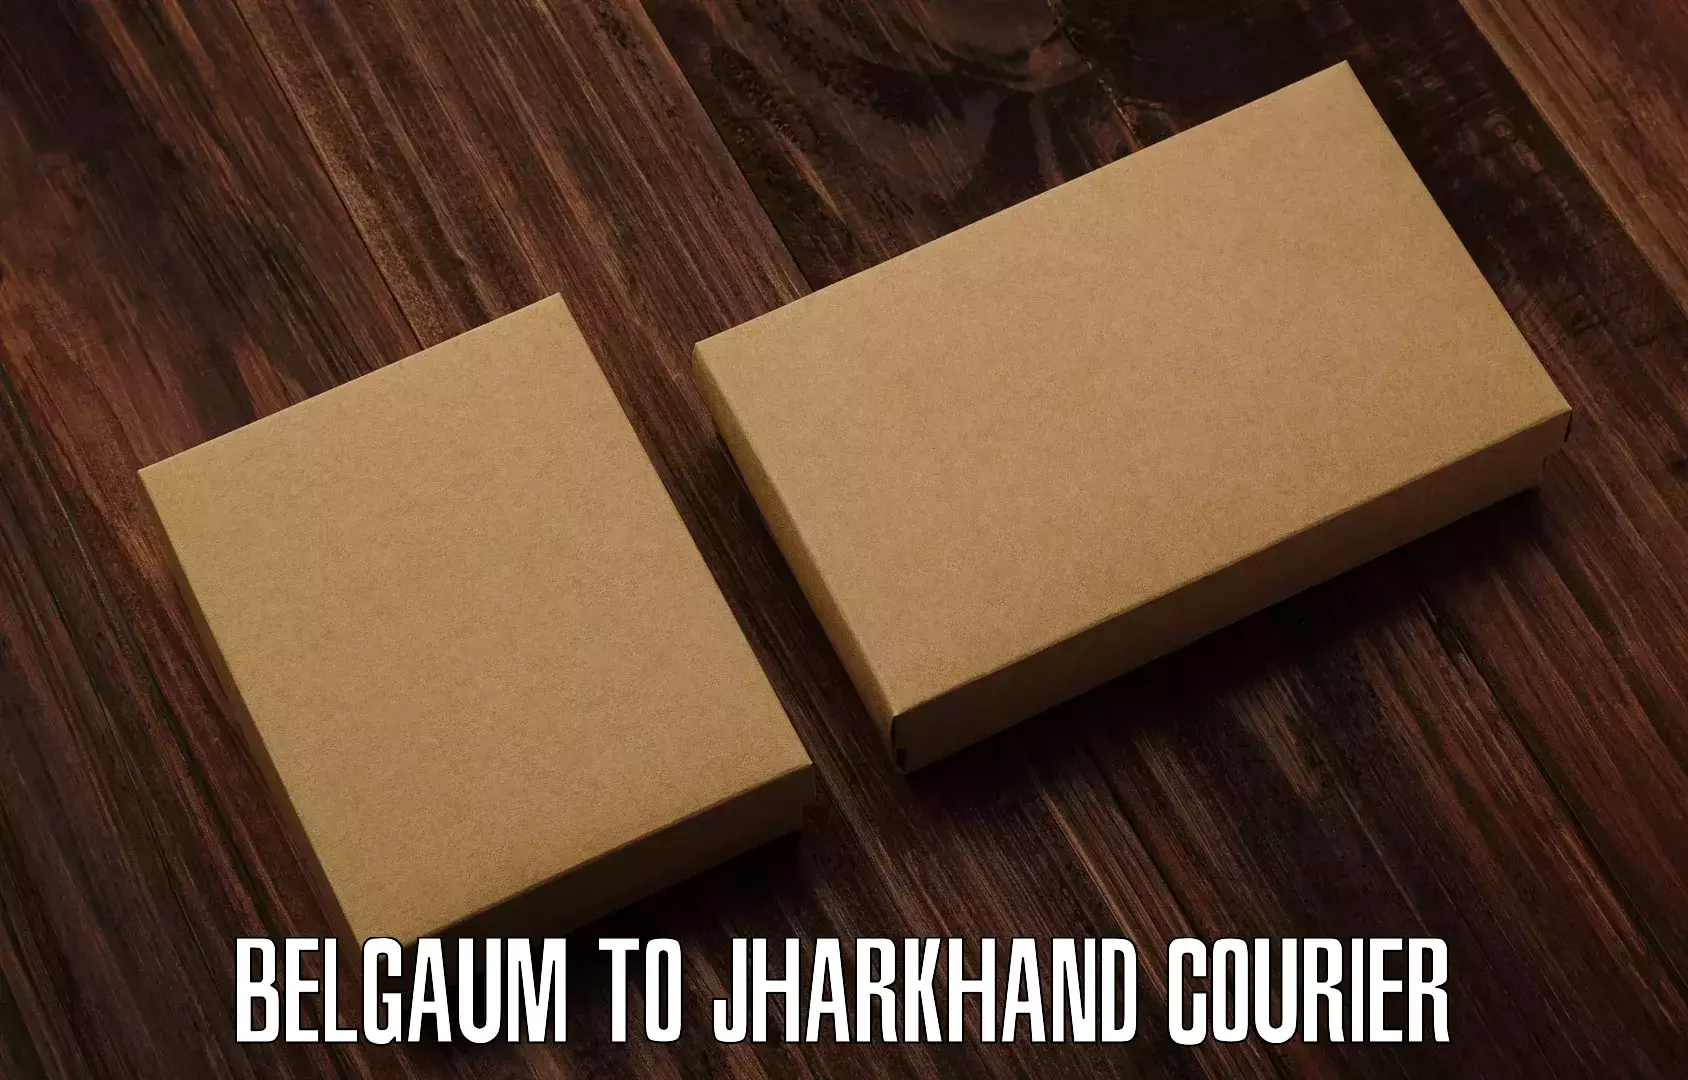 Lightweight parcel options Belgaum to Barwadih